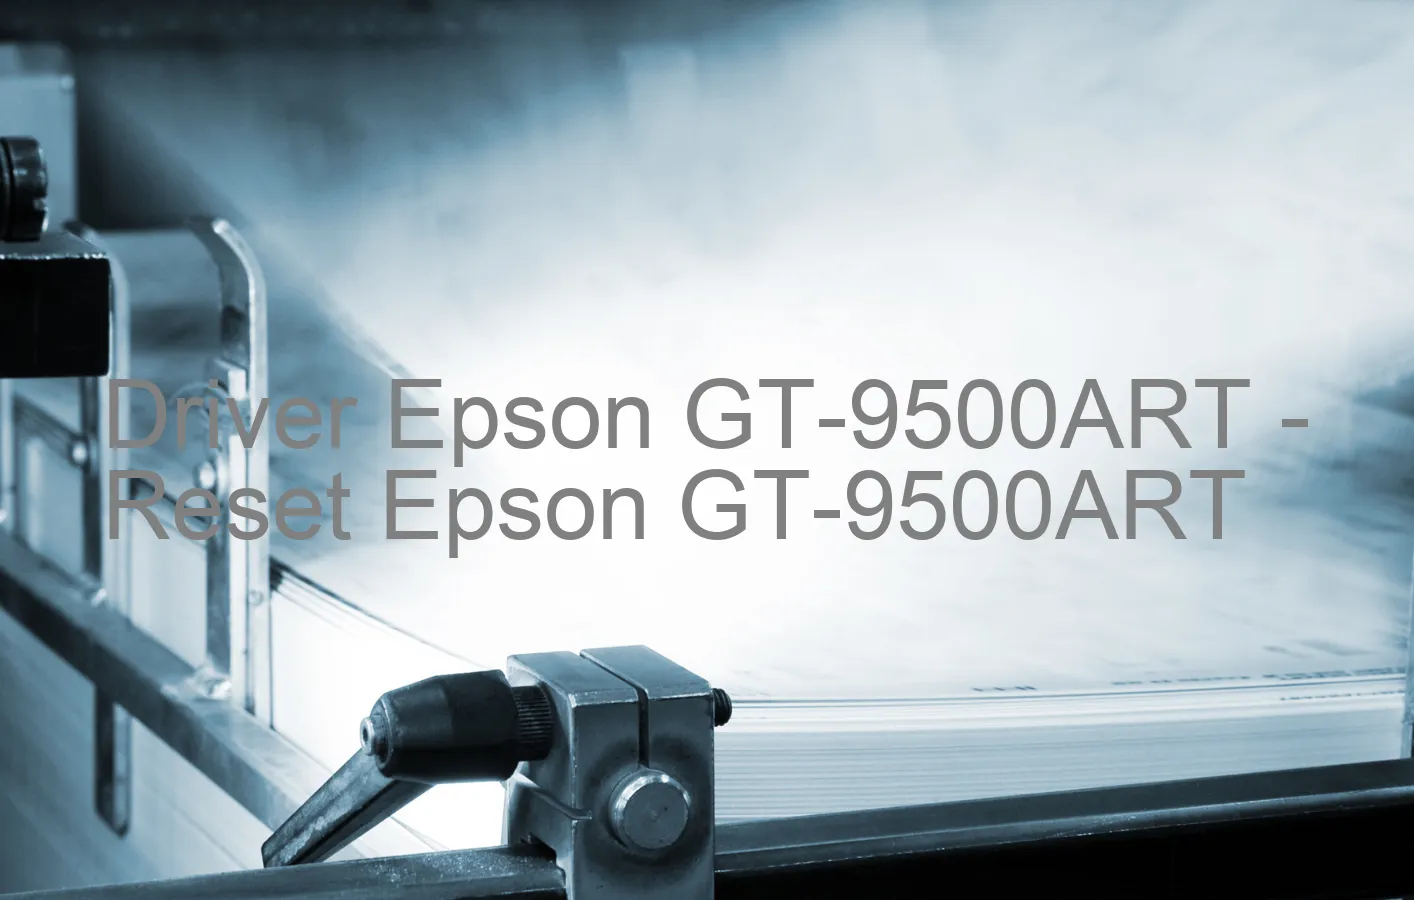 Epson GT-9500ARTのドライバー、Epson GT-9500ARTのリセットソフトウェア